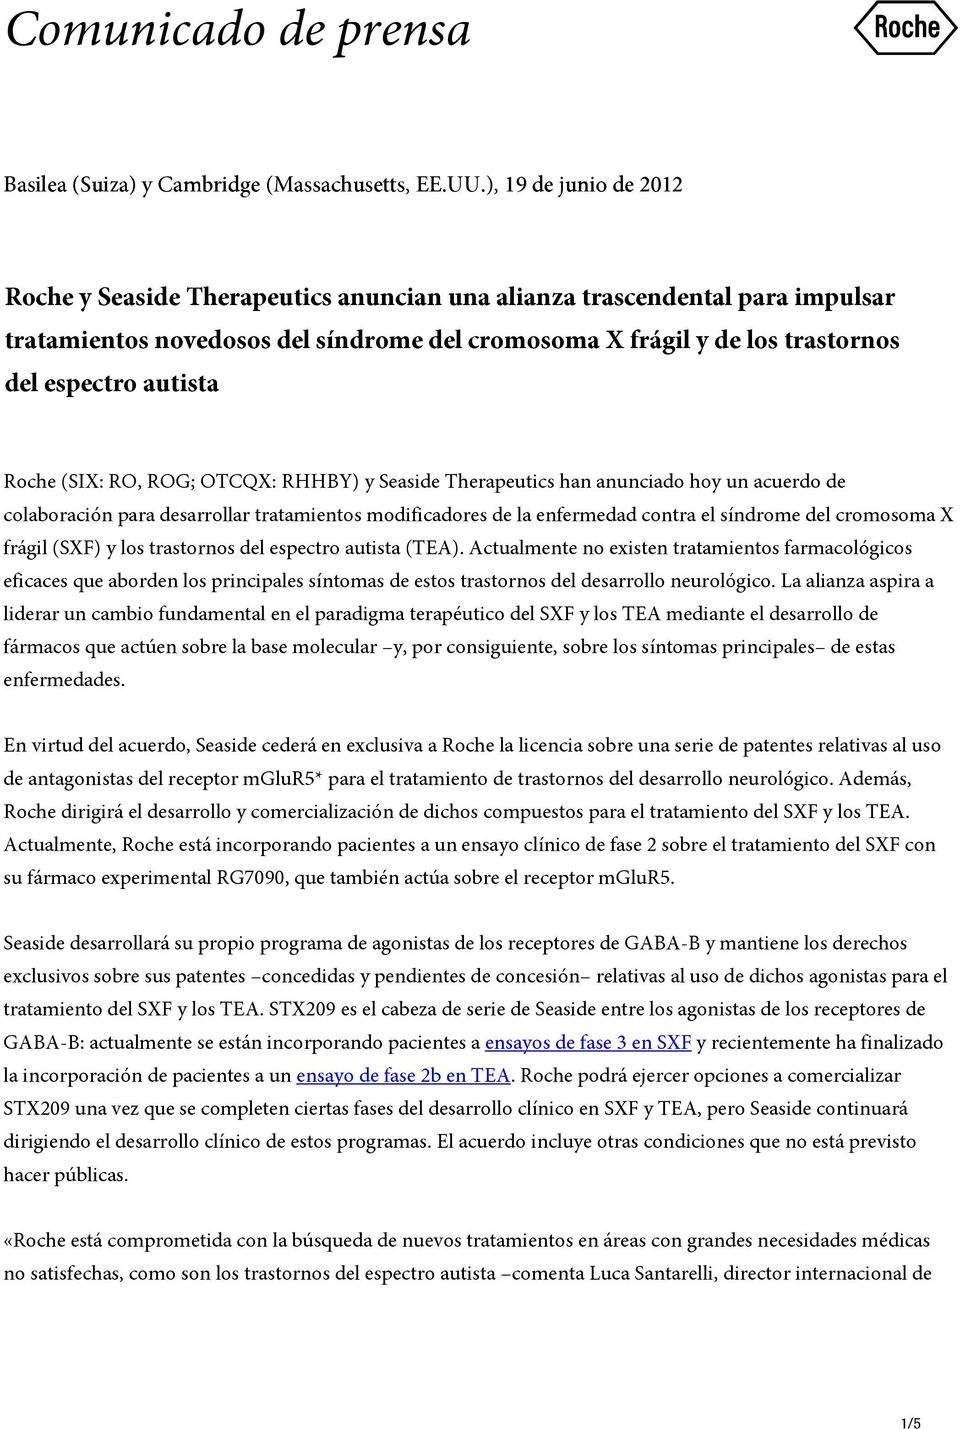 autista Roche (SIX: RO, ROG; OTCQX: RHHBY) y Seaside Therapeutics han anunciado hoy un acuerdo de colaboración para desarrollar tratamientos modificadores de la enfermedad contra el síndrome del